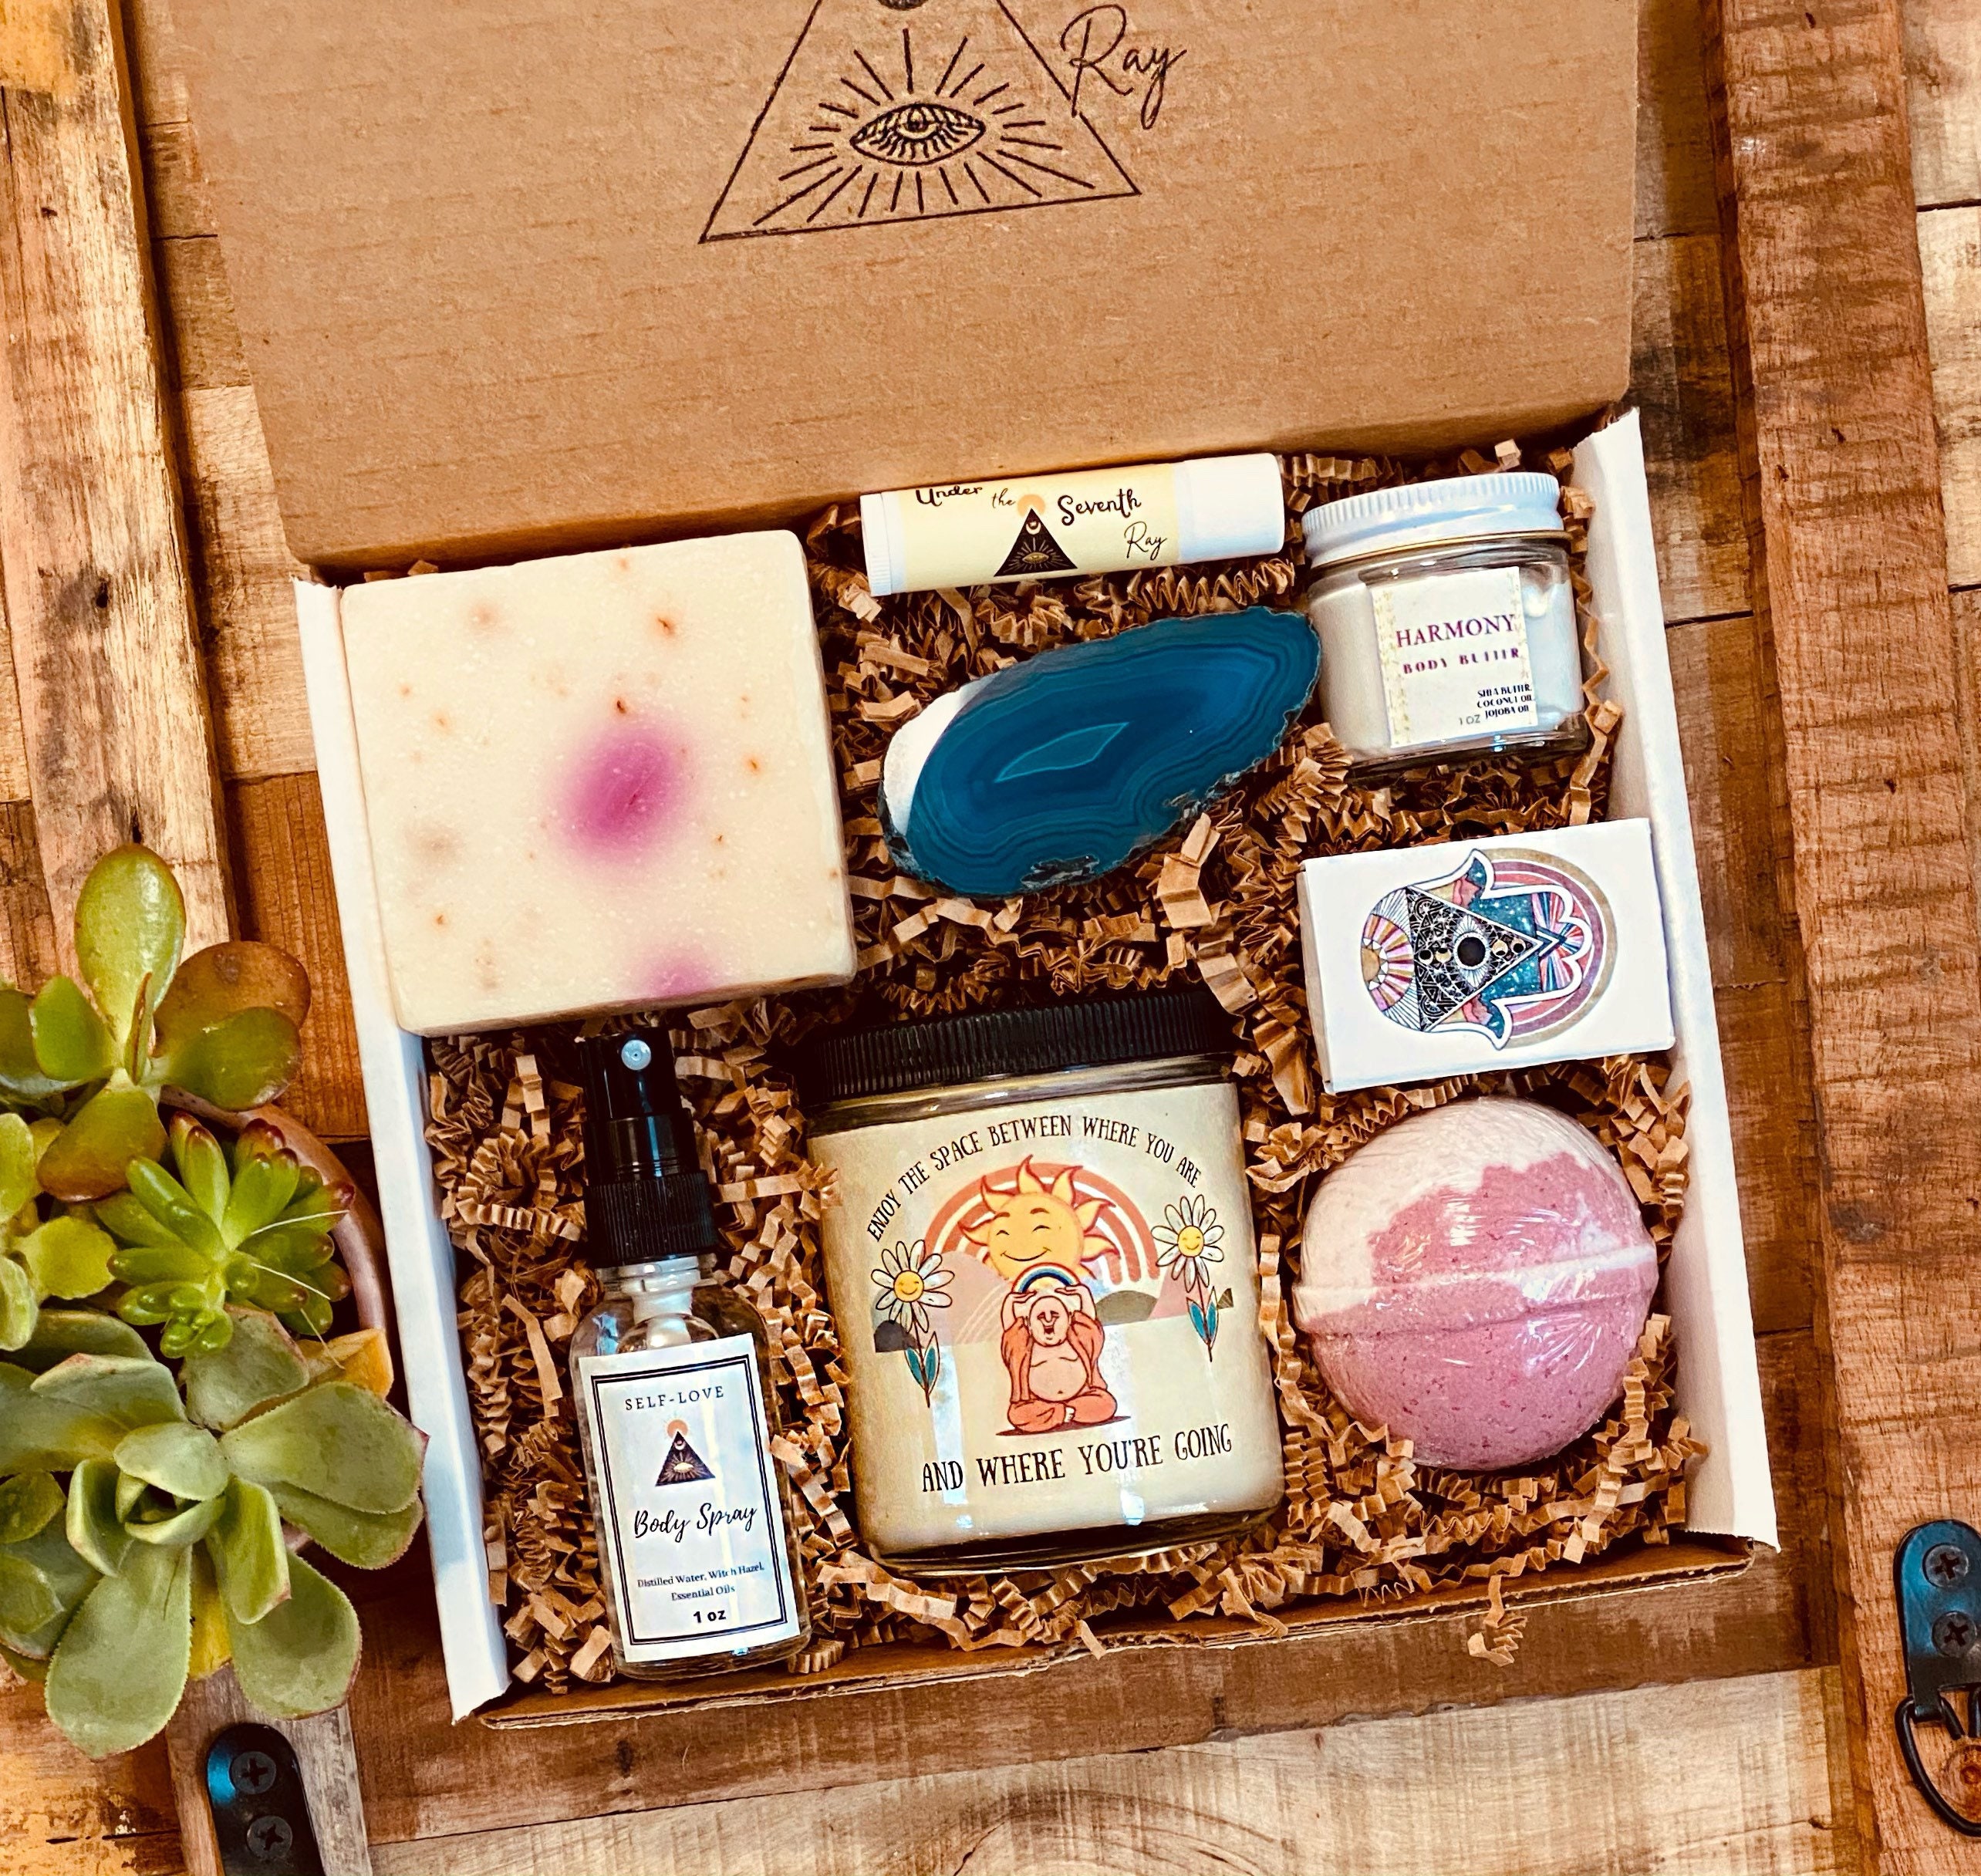 Biome Gift Box - Mindfulness Box